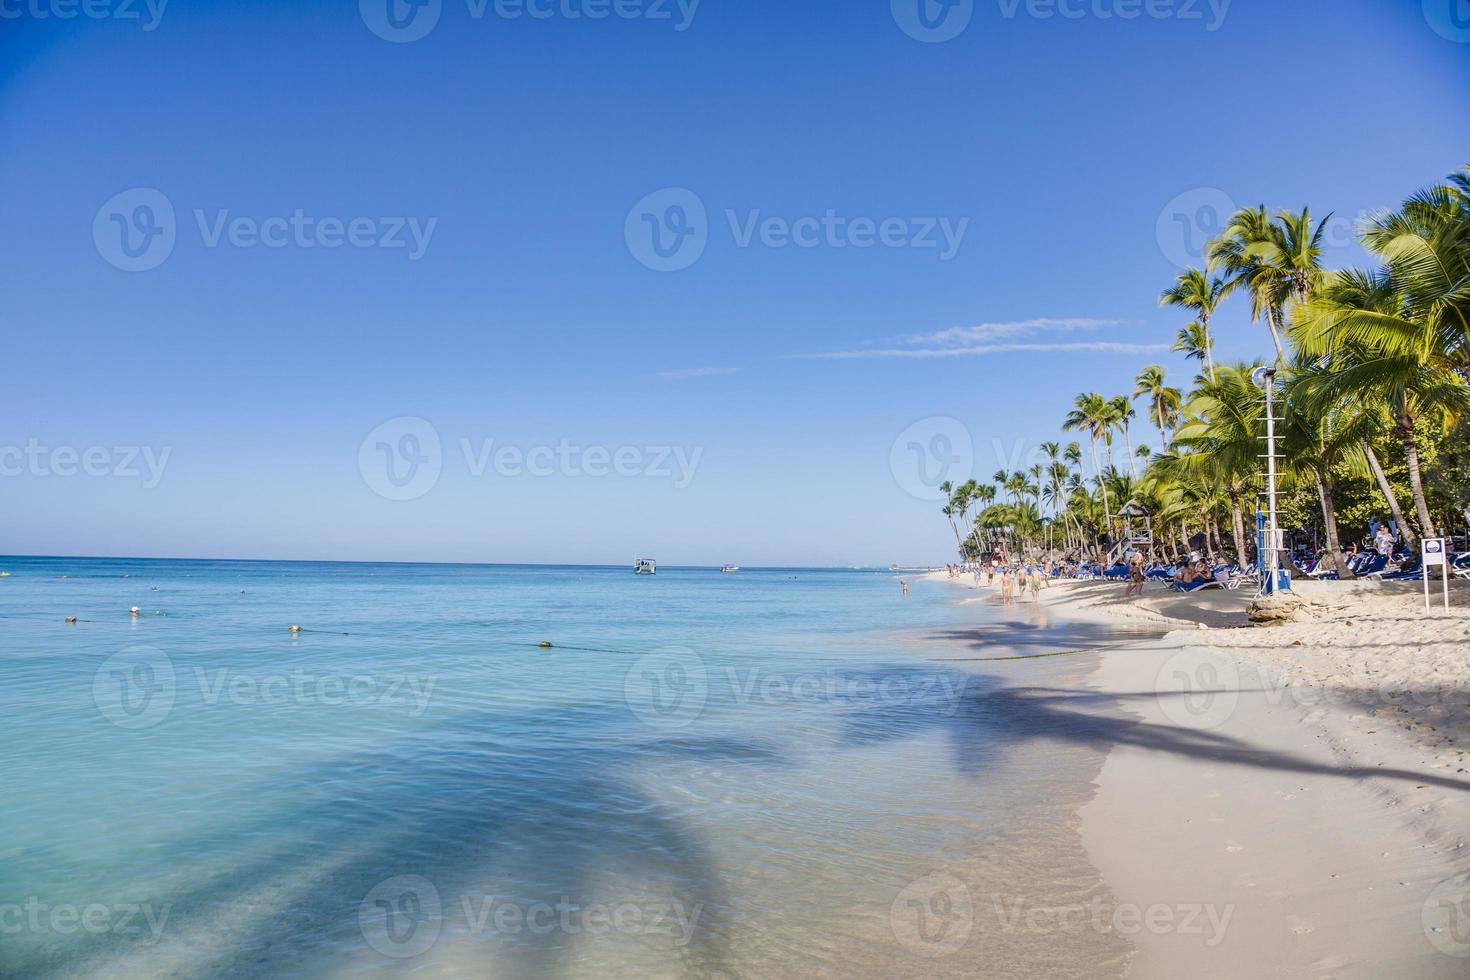 tropisk strand på de karibiska ö av domenikanska republik under dagtid foto